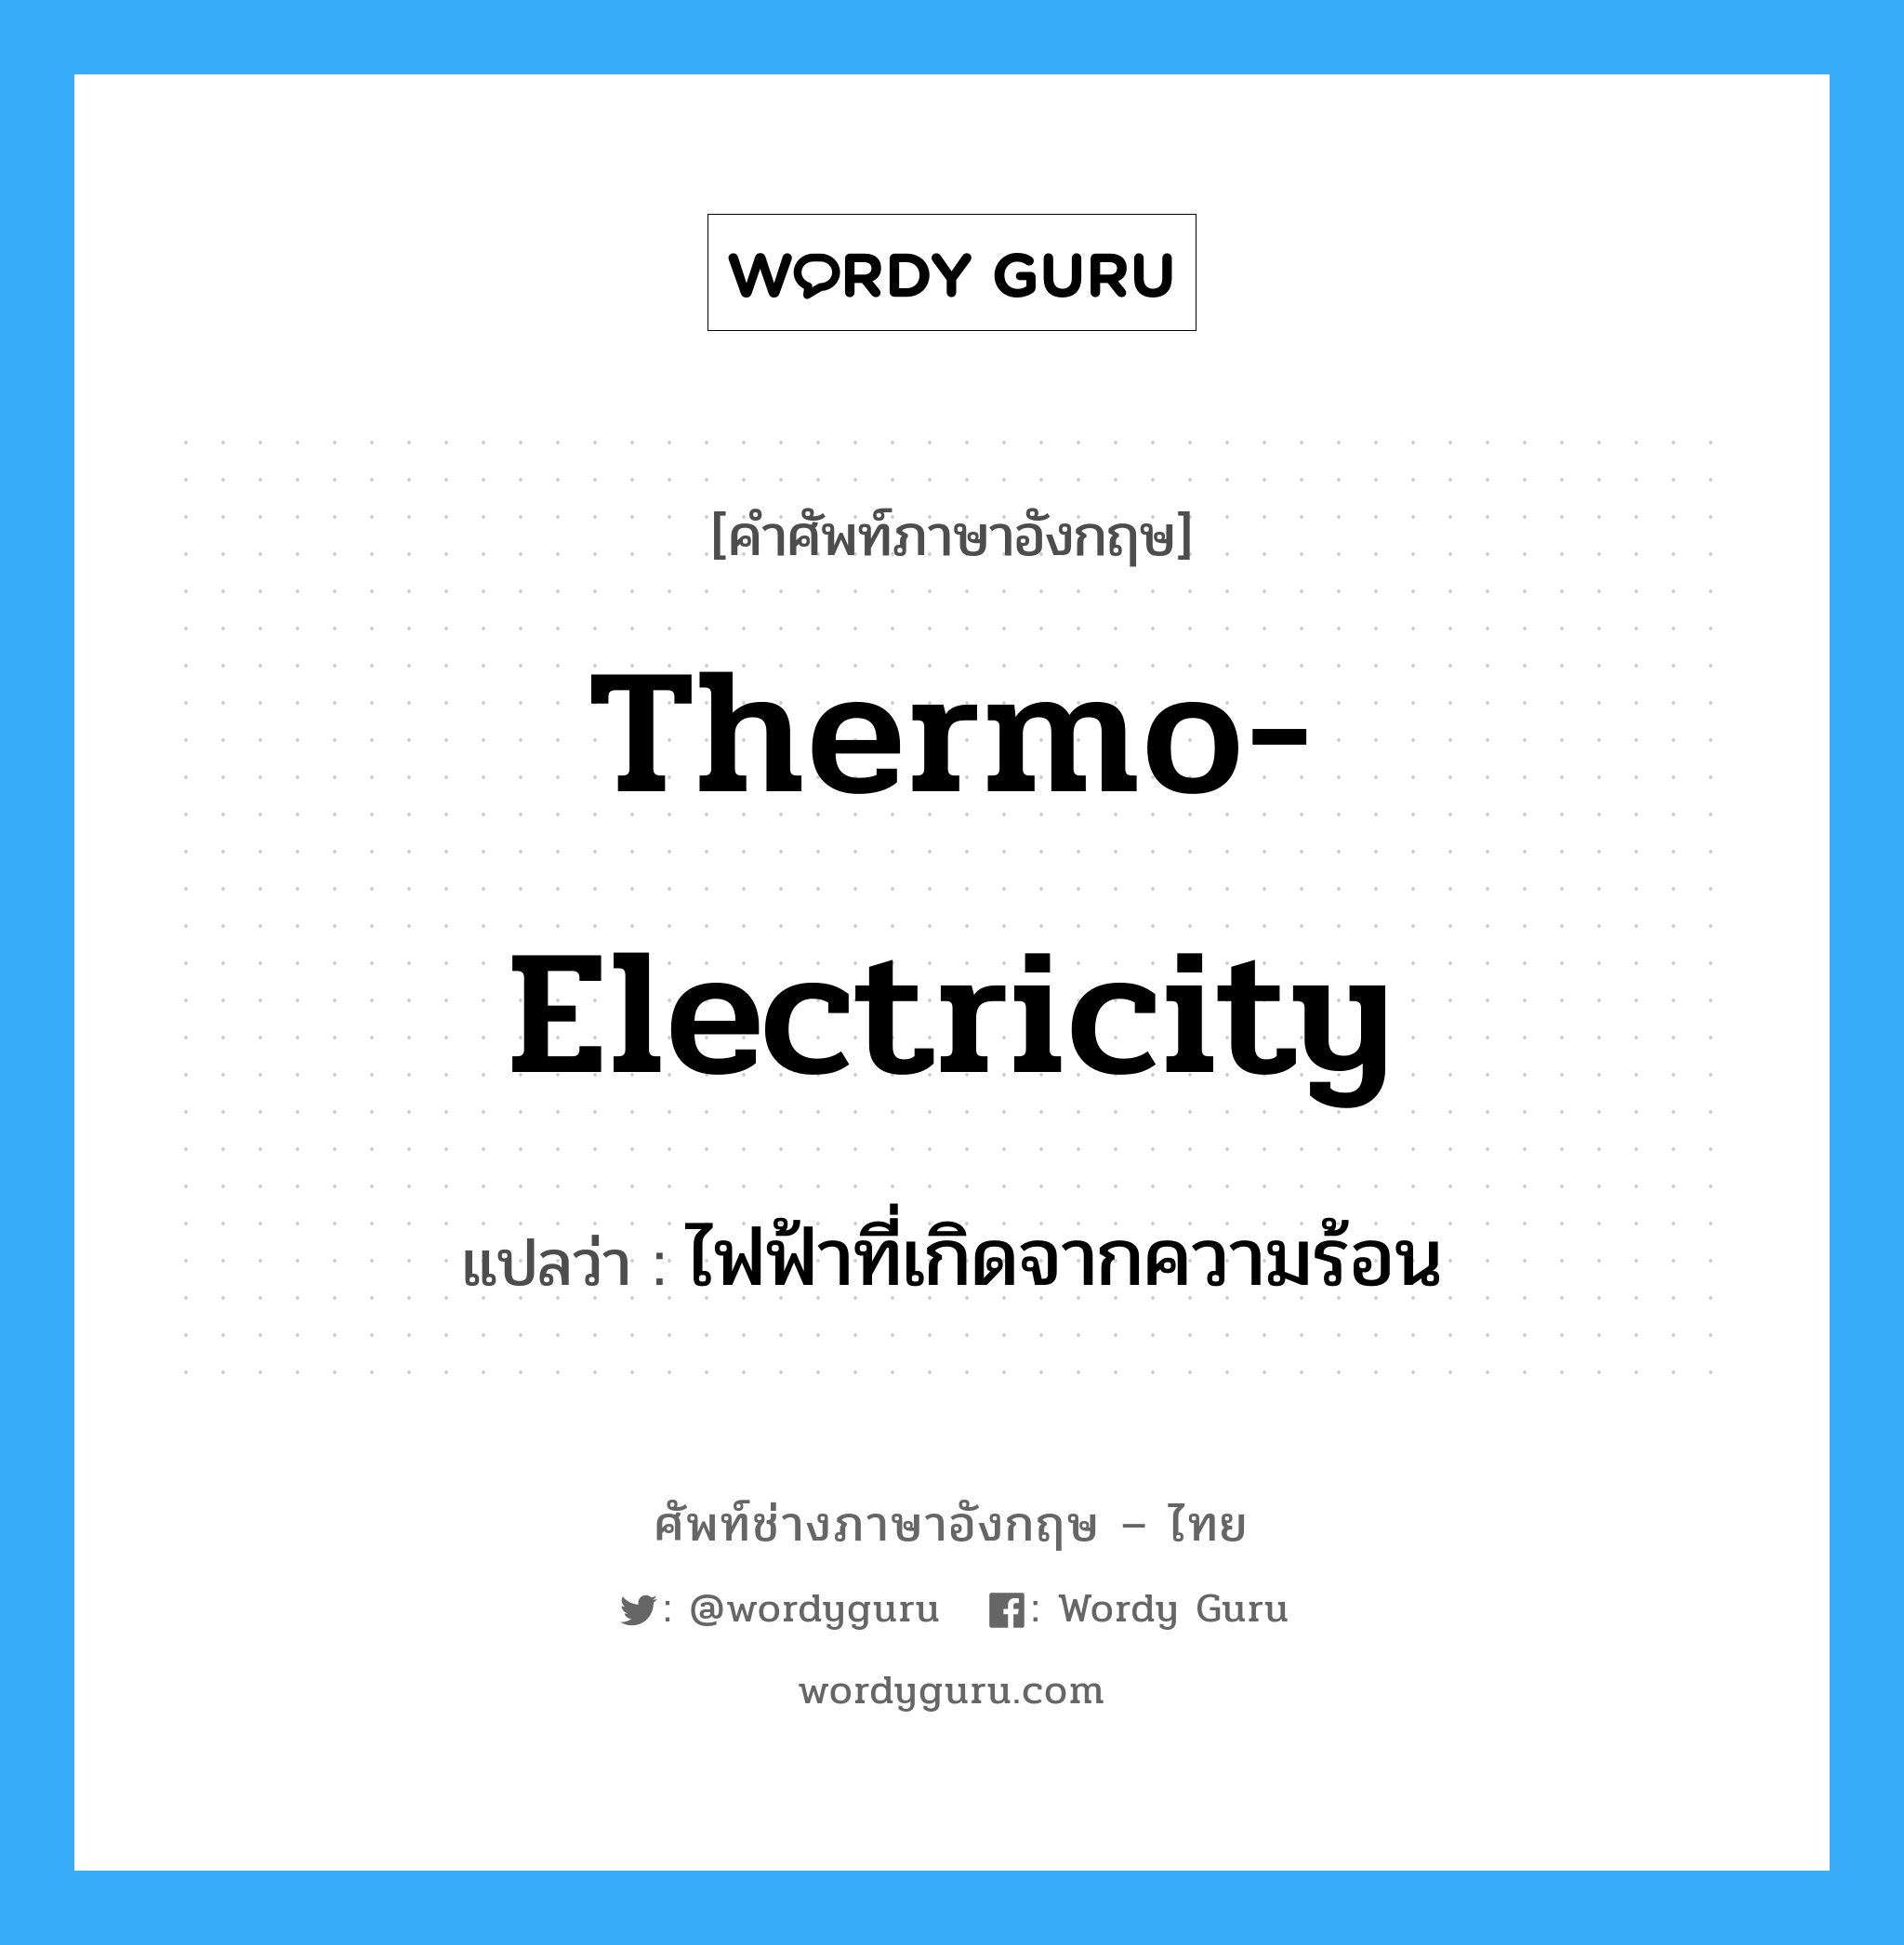 thermo-electricity แปลว่า?, คำศัพท์ช่างภาษาอังกฤษ - ไทย thermo-electricity คำศัพท์ภาษาอังกฤษ thermo-electricity แปลว่า ไฟฟ้าที่เกิดจากความร้อน